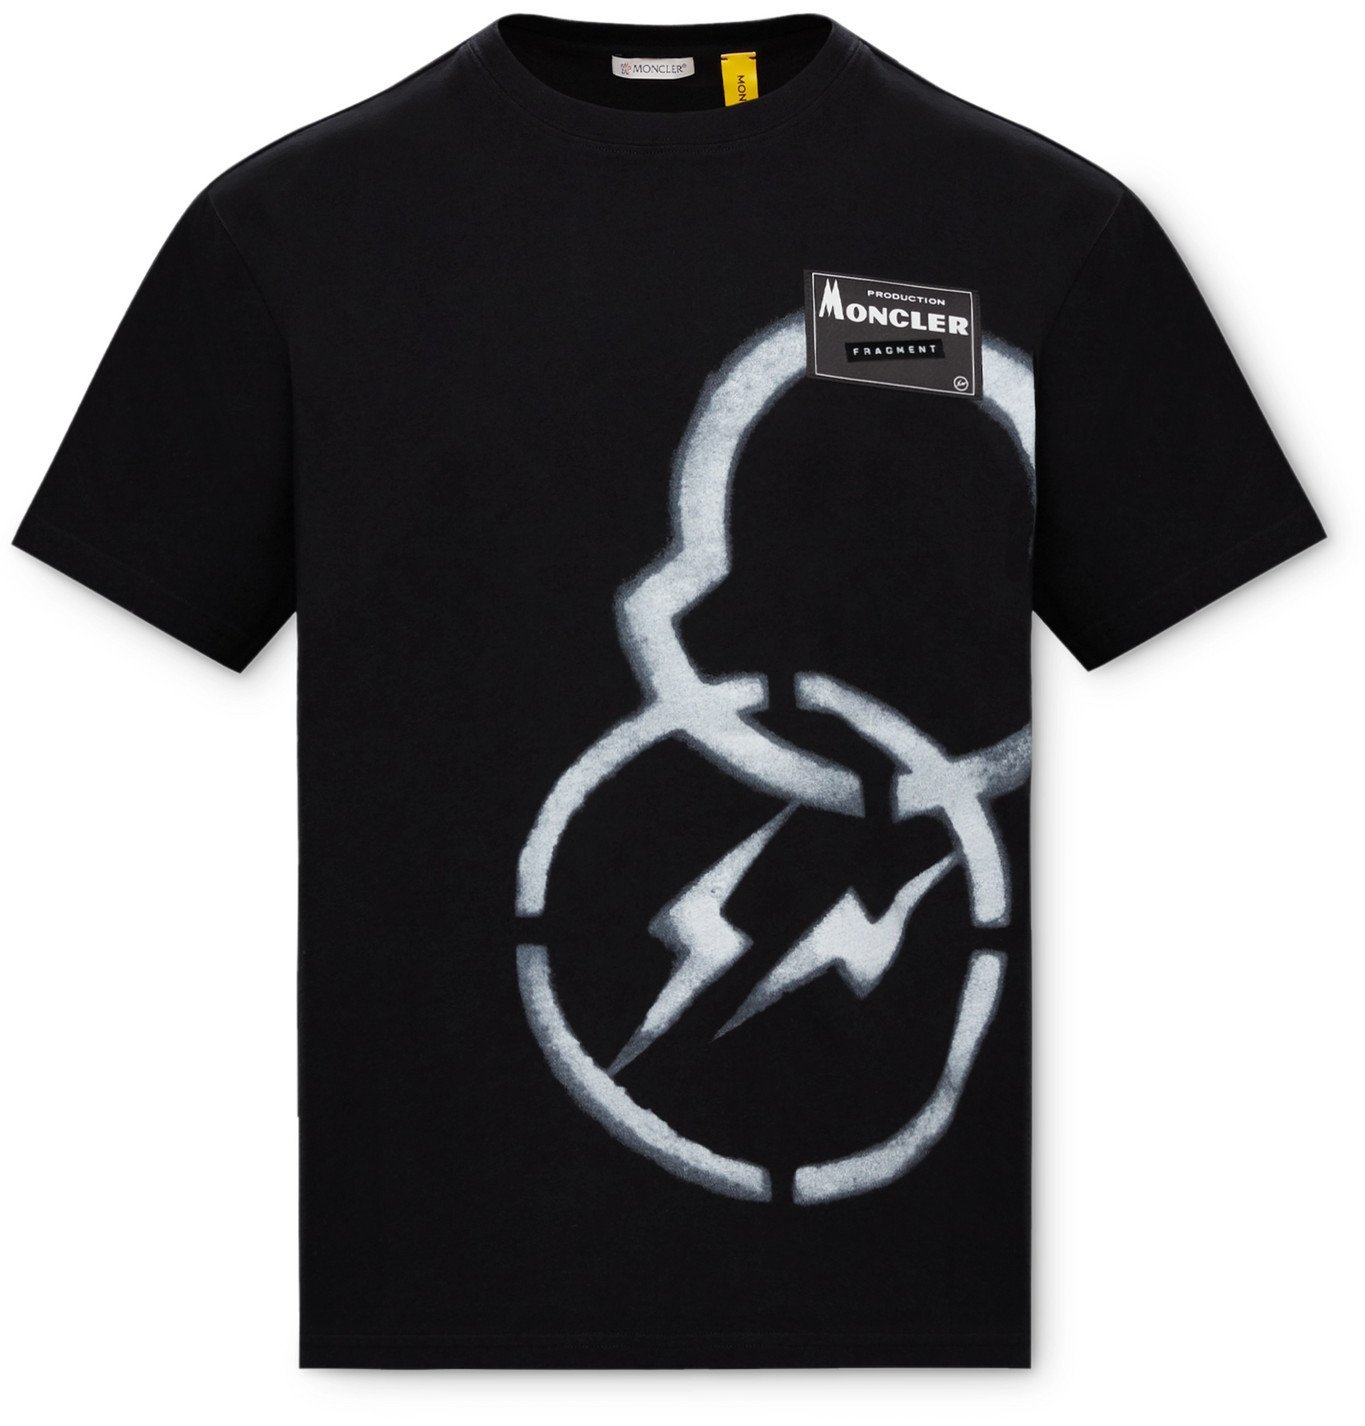 モンクレール フラグメント ジーニアス Tシャツ XL 45360円購入 即完売